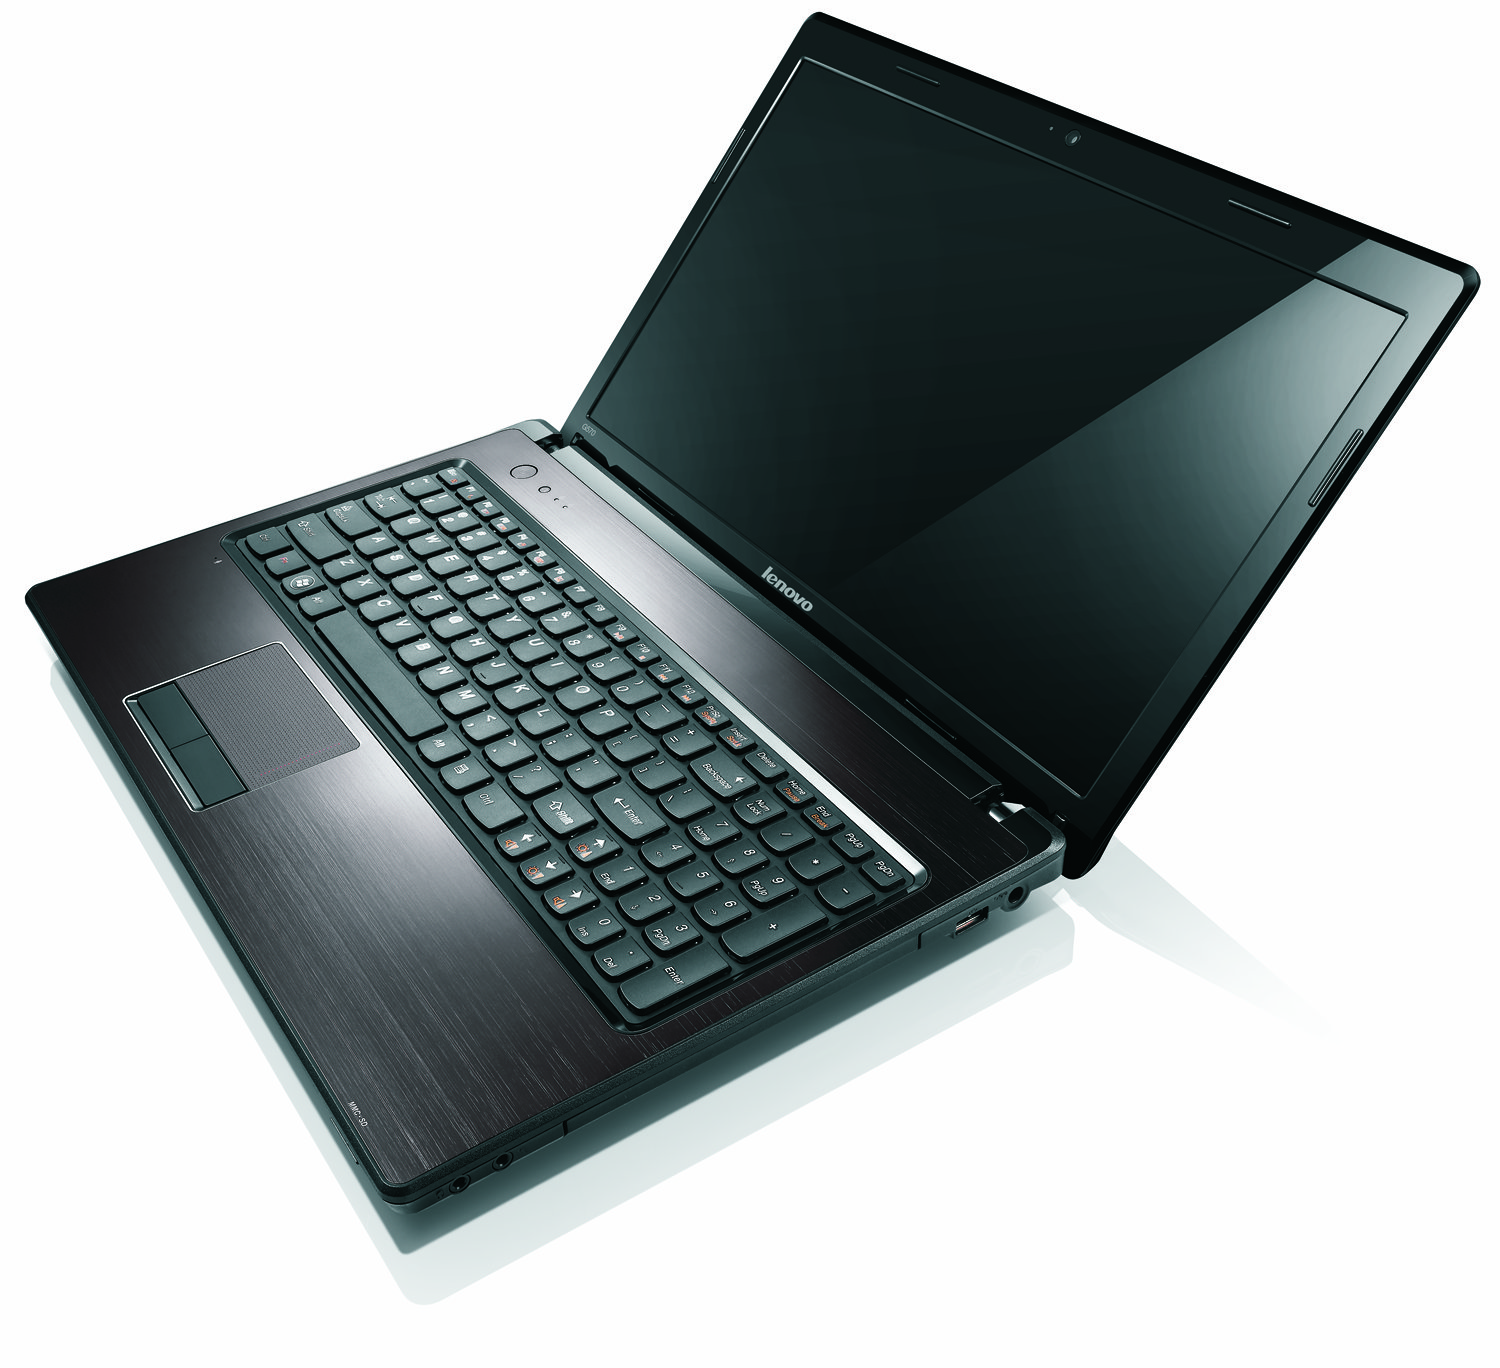 Lenovo Announces Lenovo G770, G570, G470, G575, G475 Laptops at 